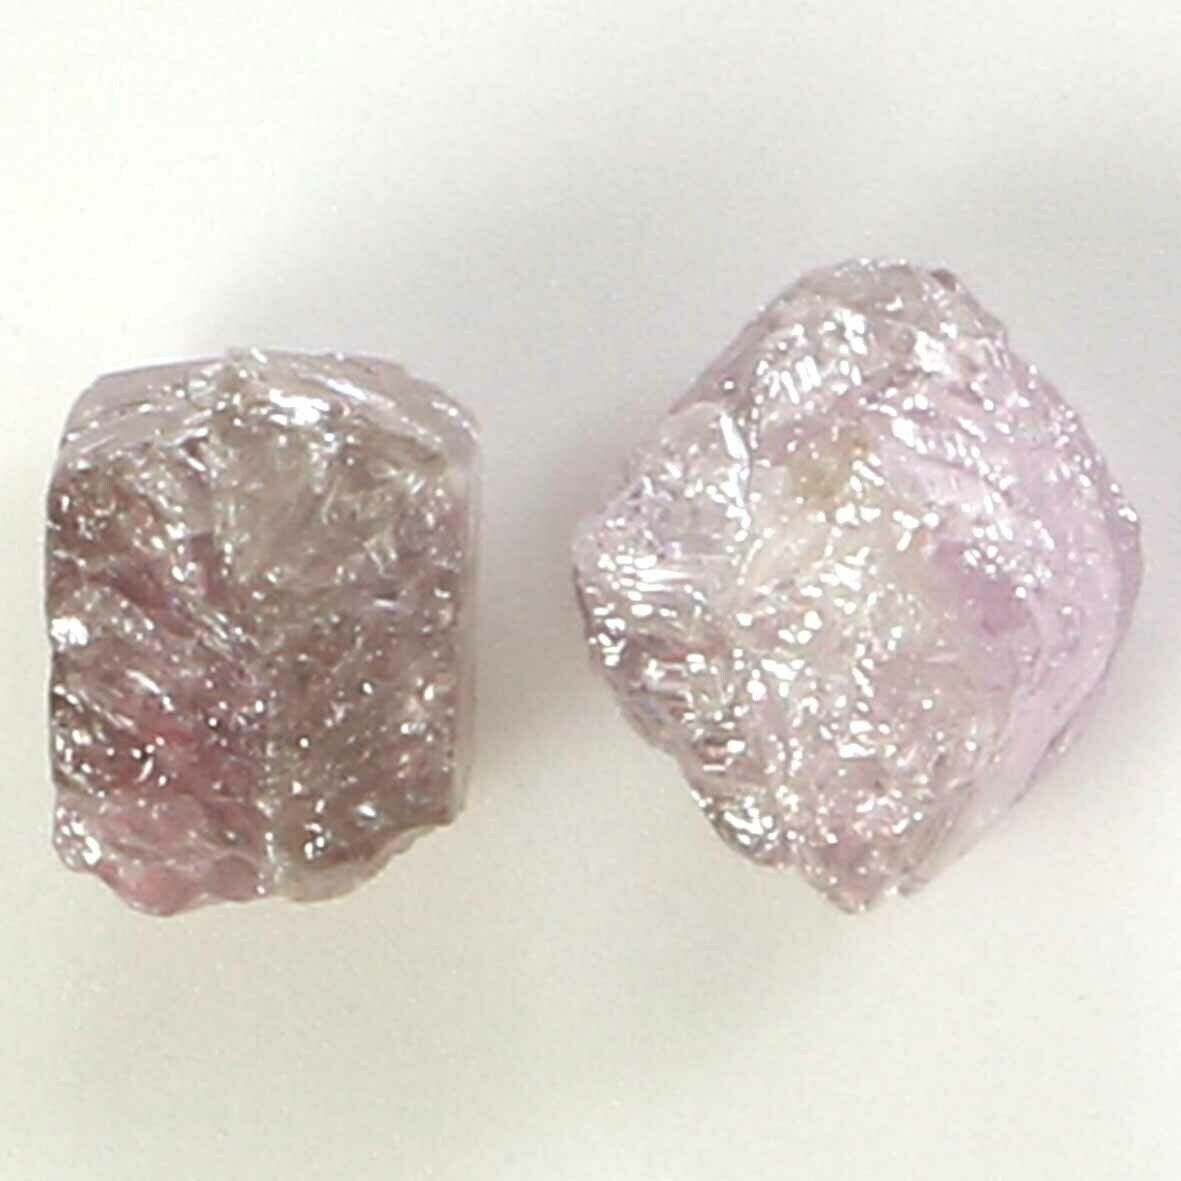 1.38 Ct Natural Loose Diamond, Rough Diamond, Pink Rough Diamond N745